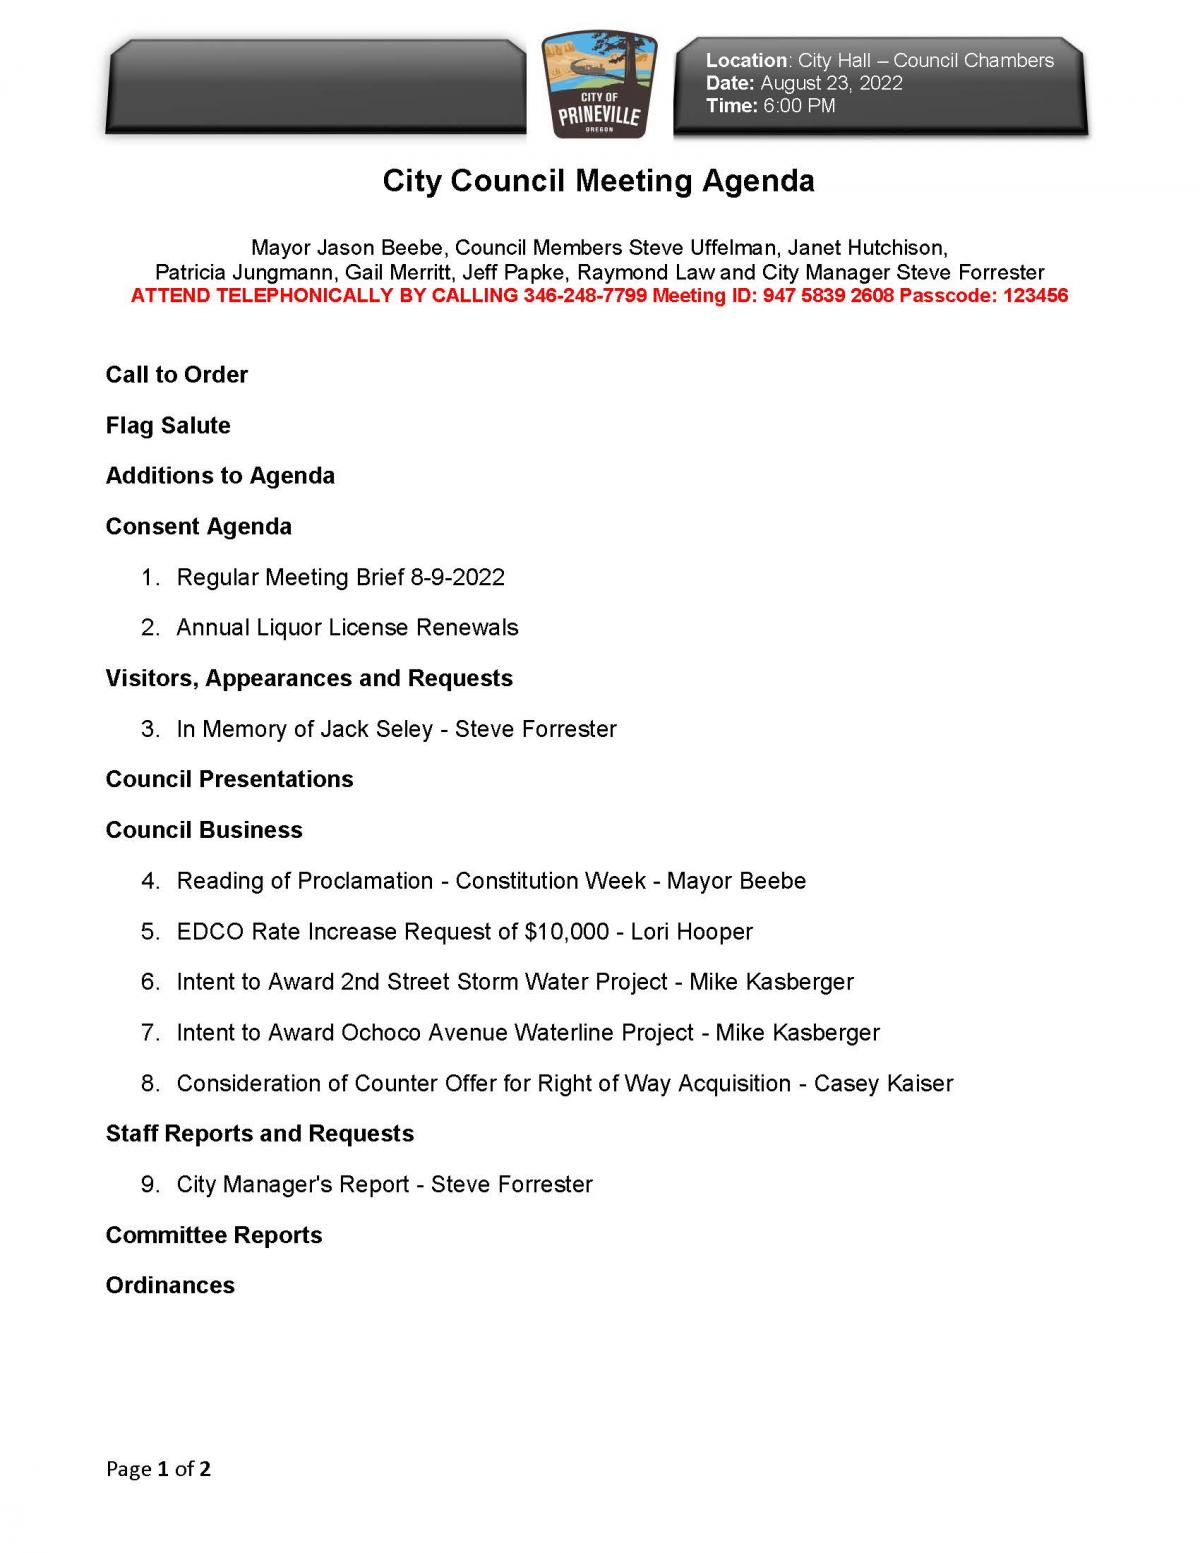 Council Agenda pg 1